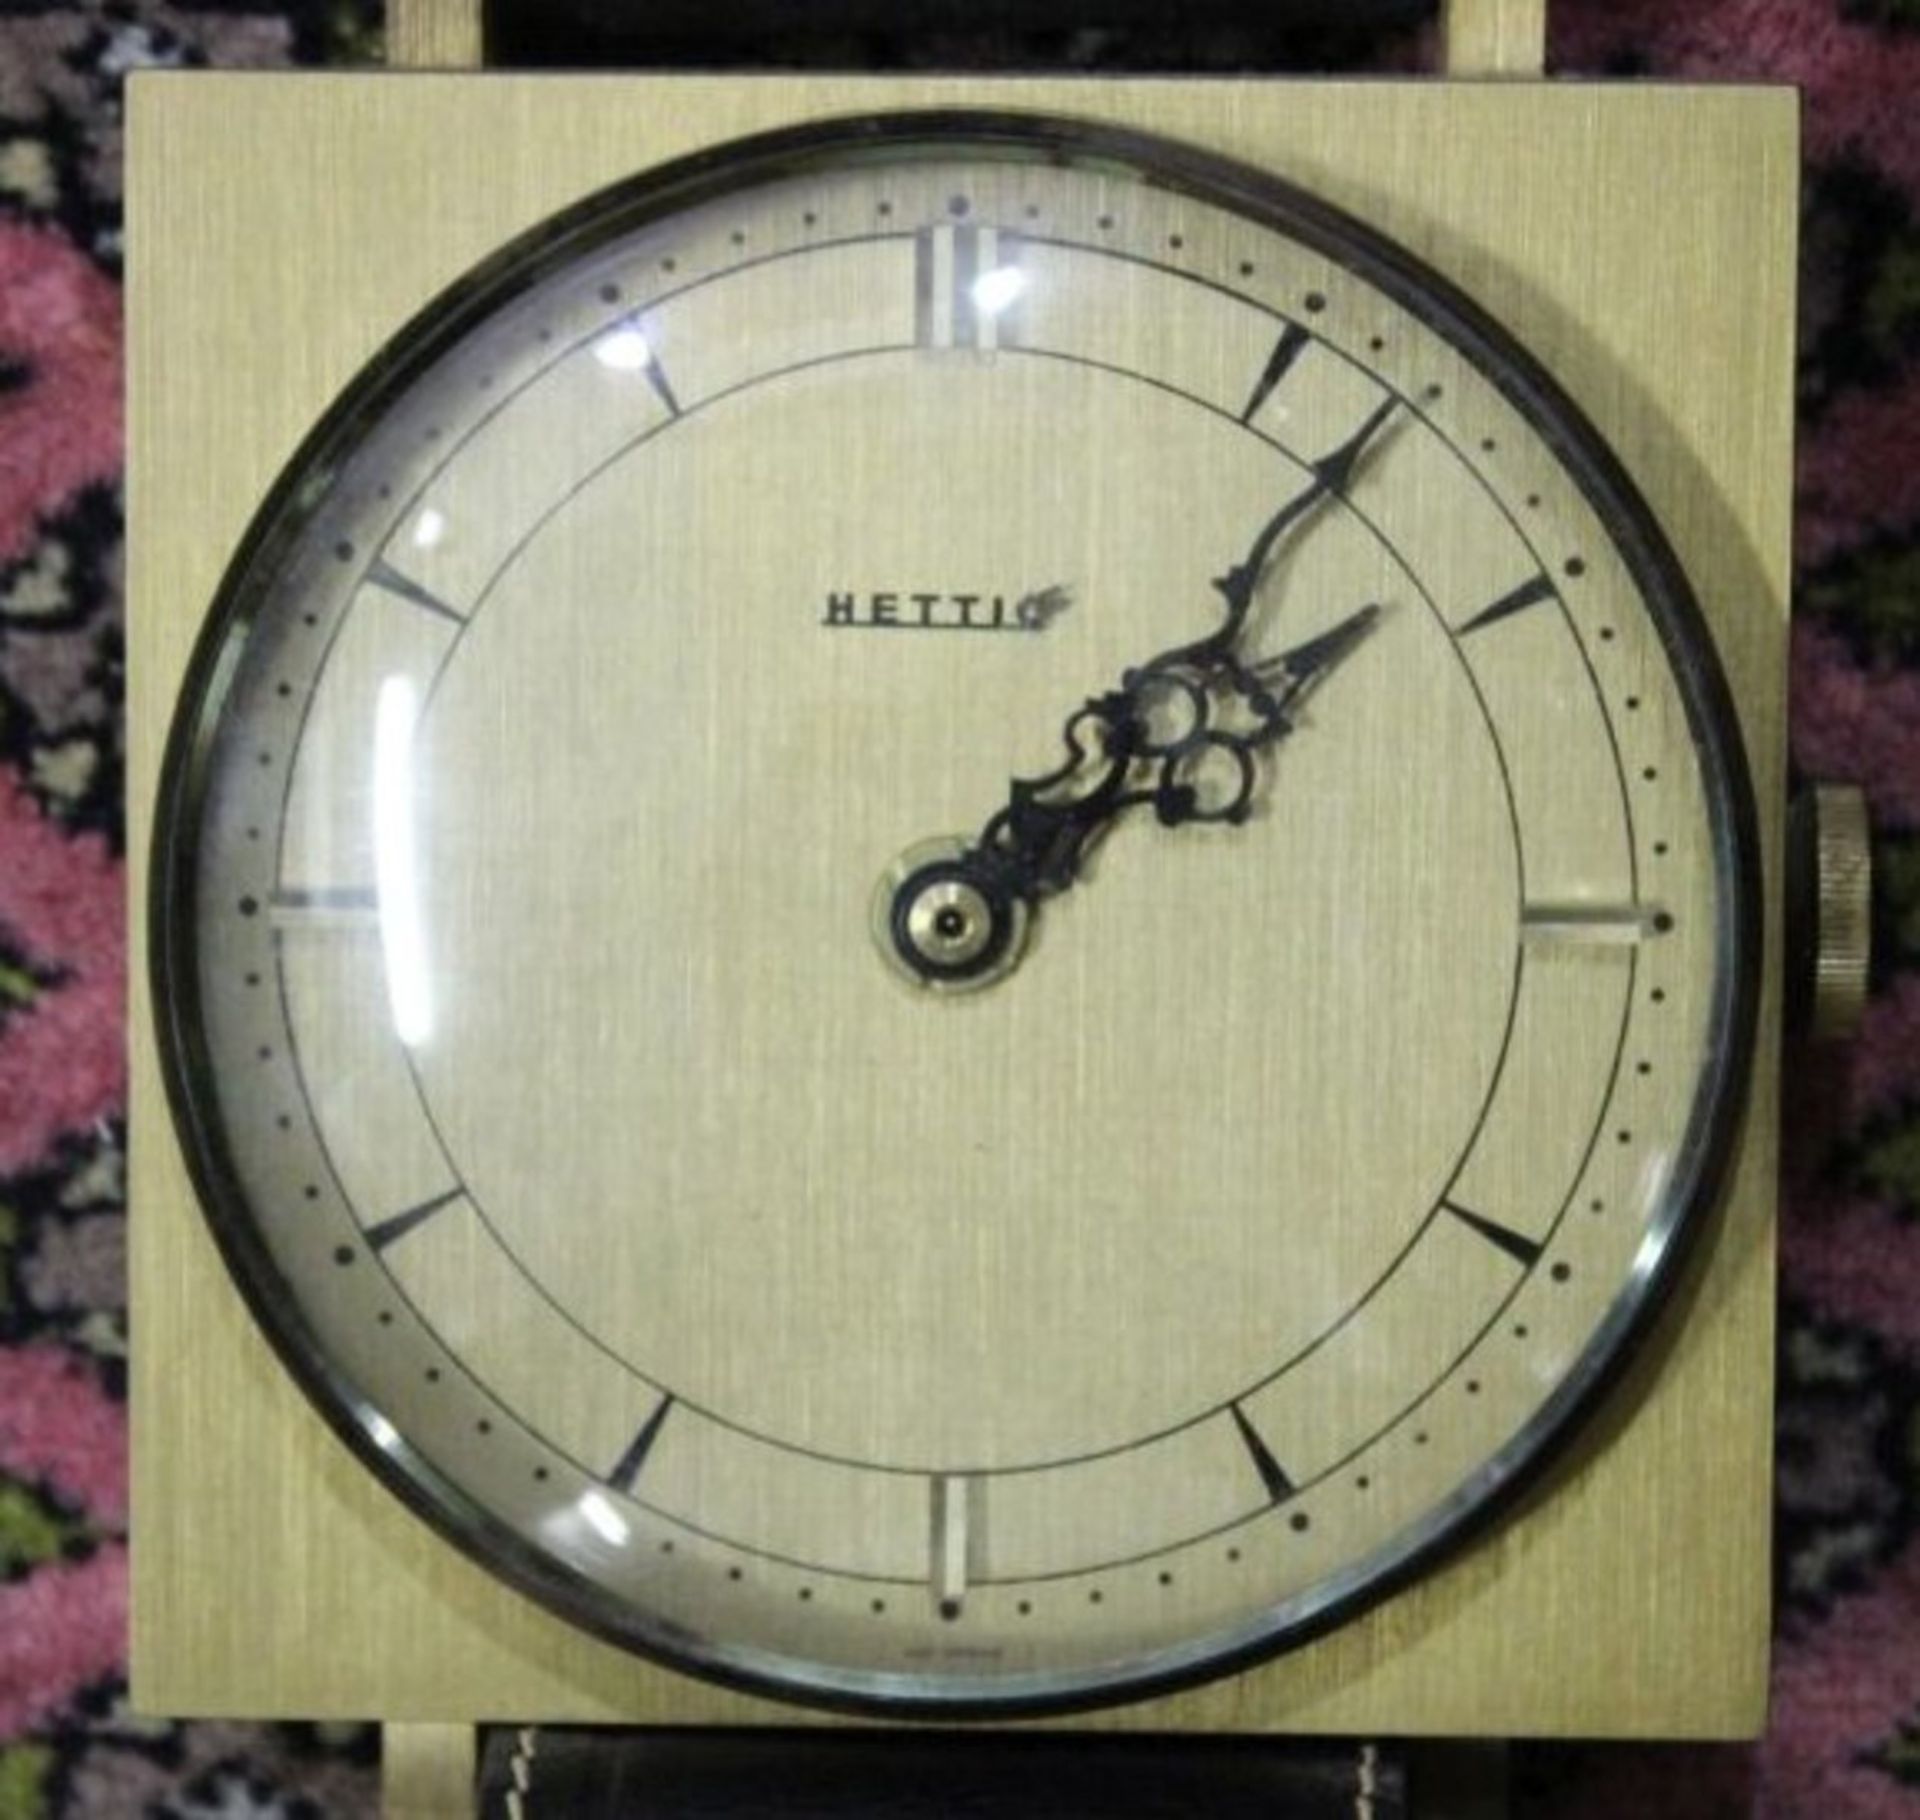 Wanduhr in Form einer Armbanduhr, Hettig, Batteriewerk, Funktion nicht geprüft, L-75cm. - Bild 2 aus 3